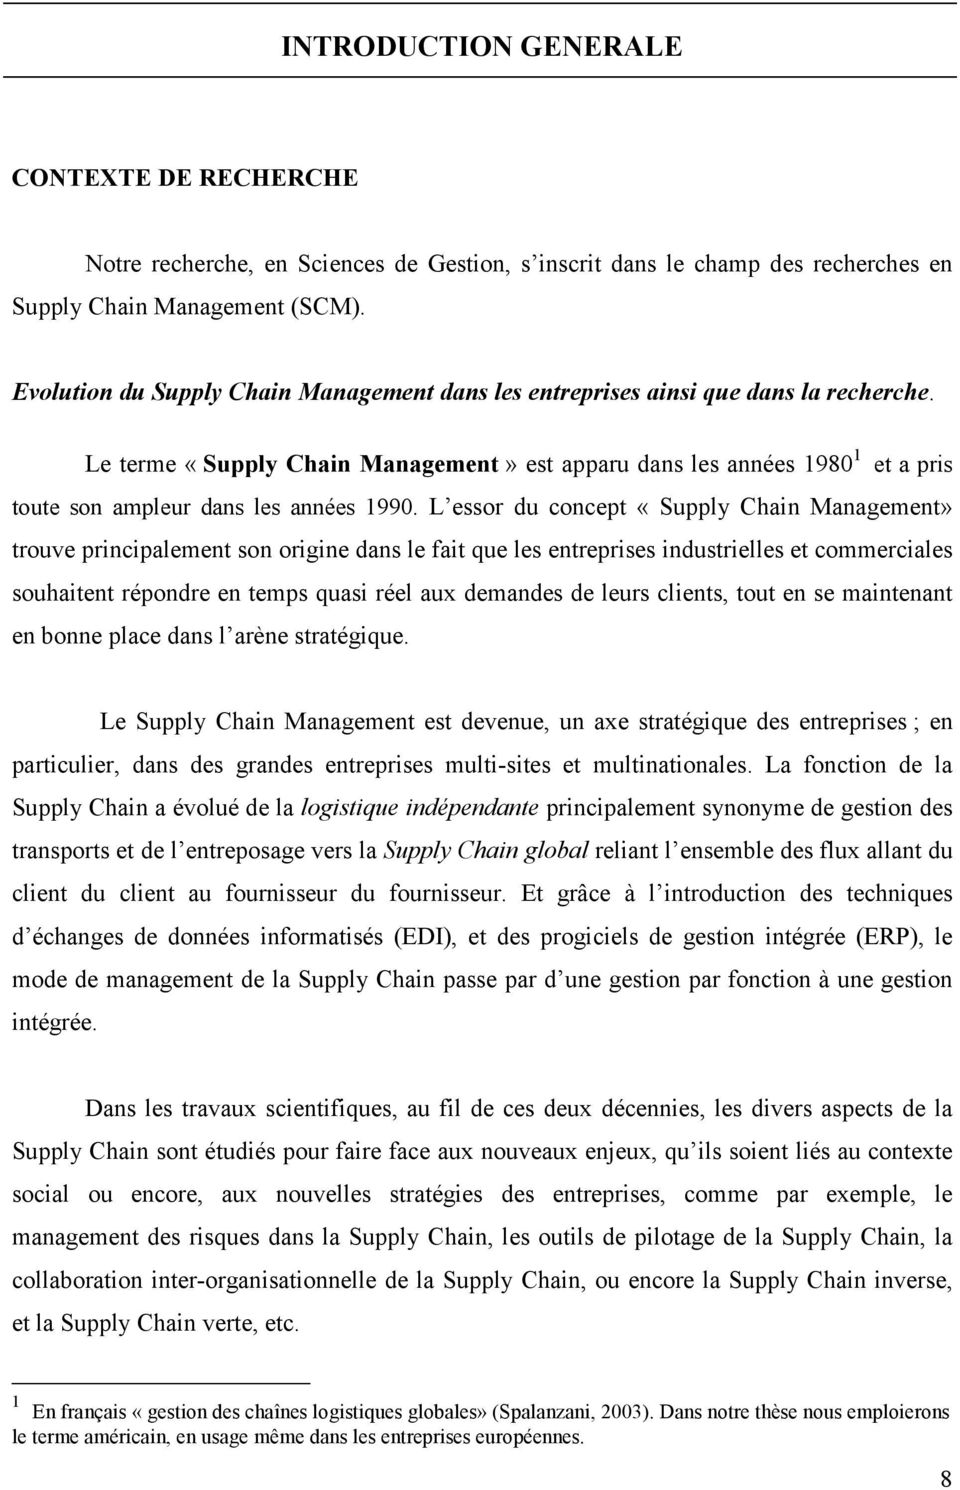 Le terme «Supply Chain Management» est apparu dans les années 1980 1 et a pris toute son ampleur dans les années 1990.